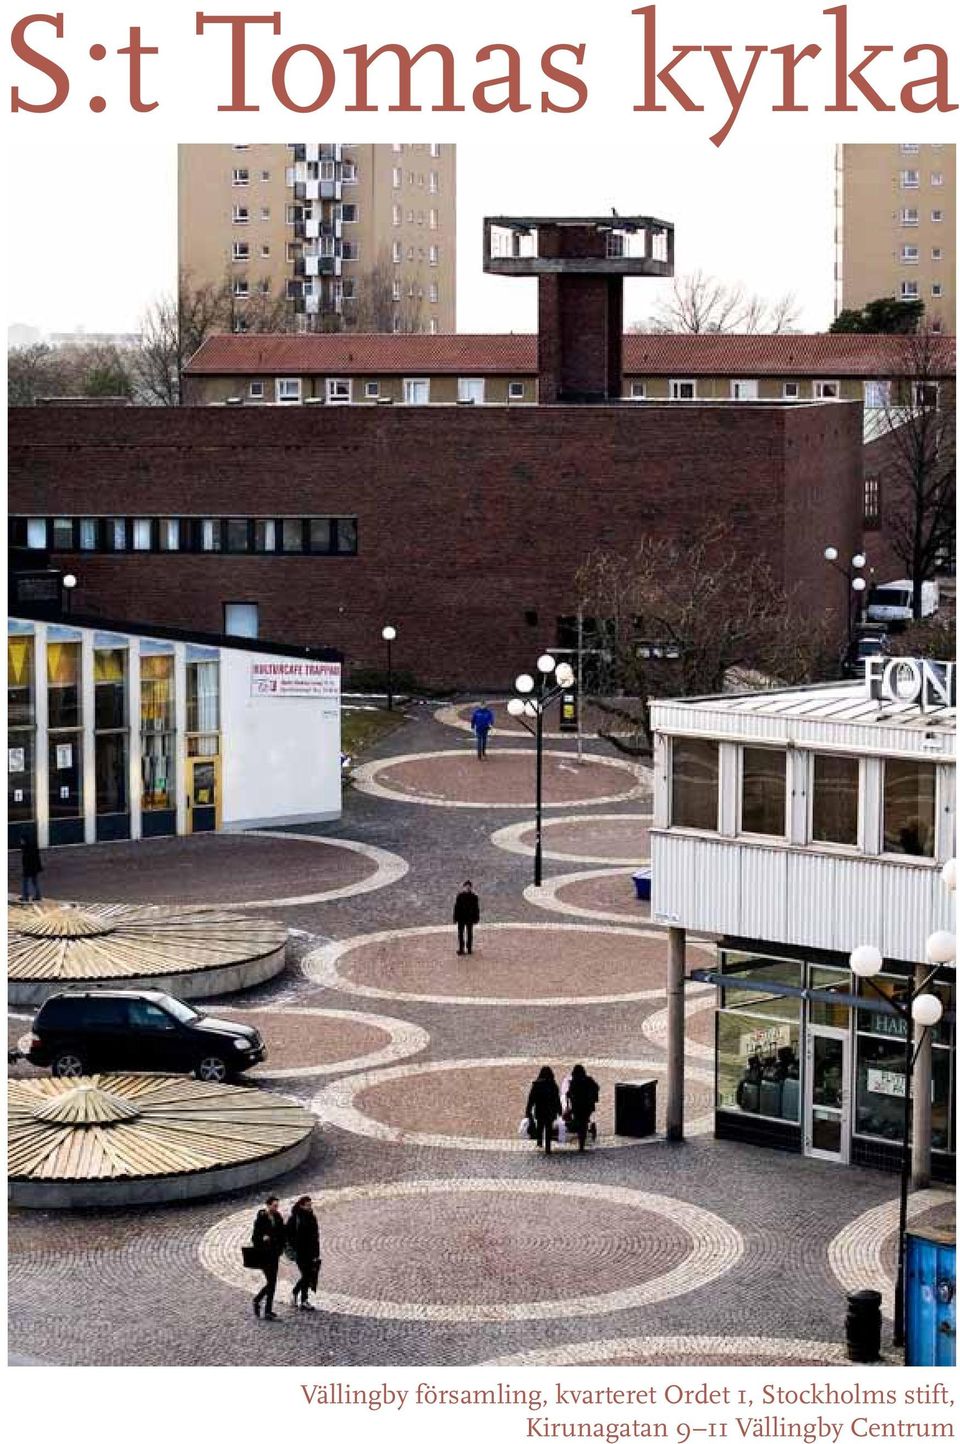 S:t Tomas kyrka. Vällingby församling, kvarteret Ordet 1, Stockholms stift,  Kirunagatan 9 11 Vällingby Centrum - PDF Gratis nedladdning